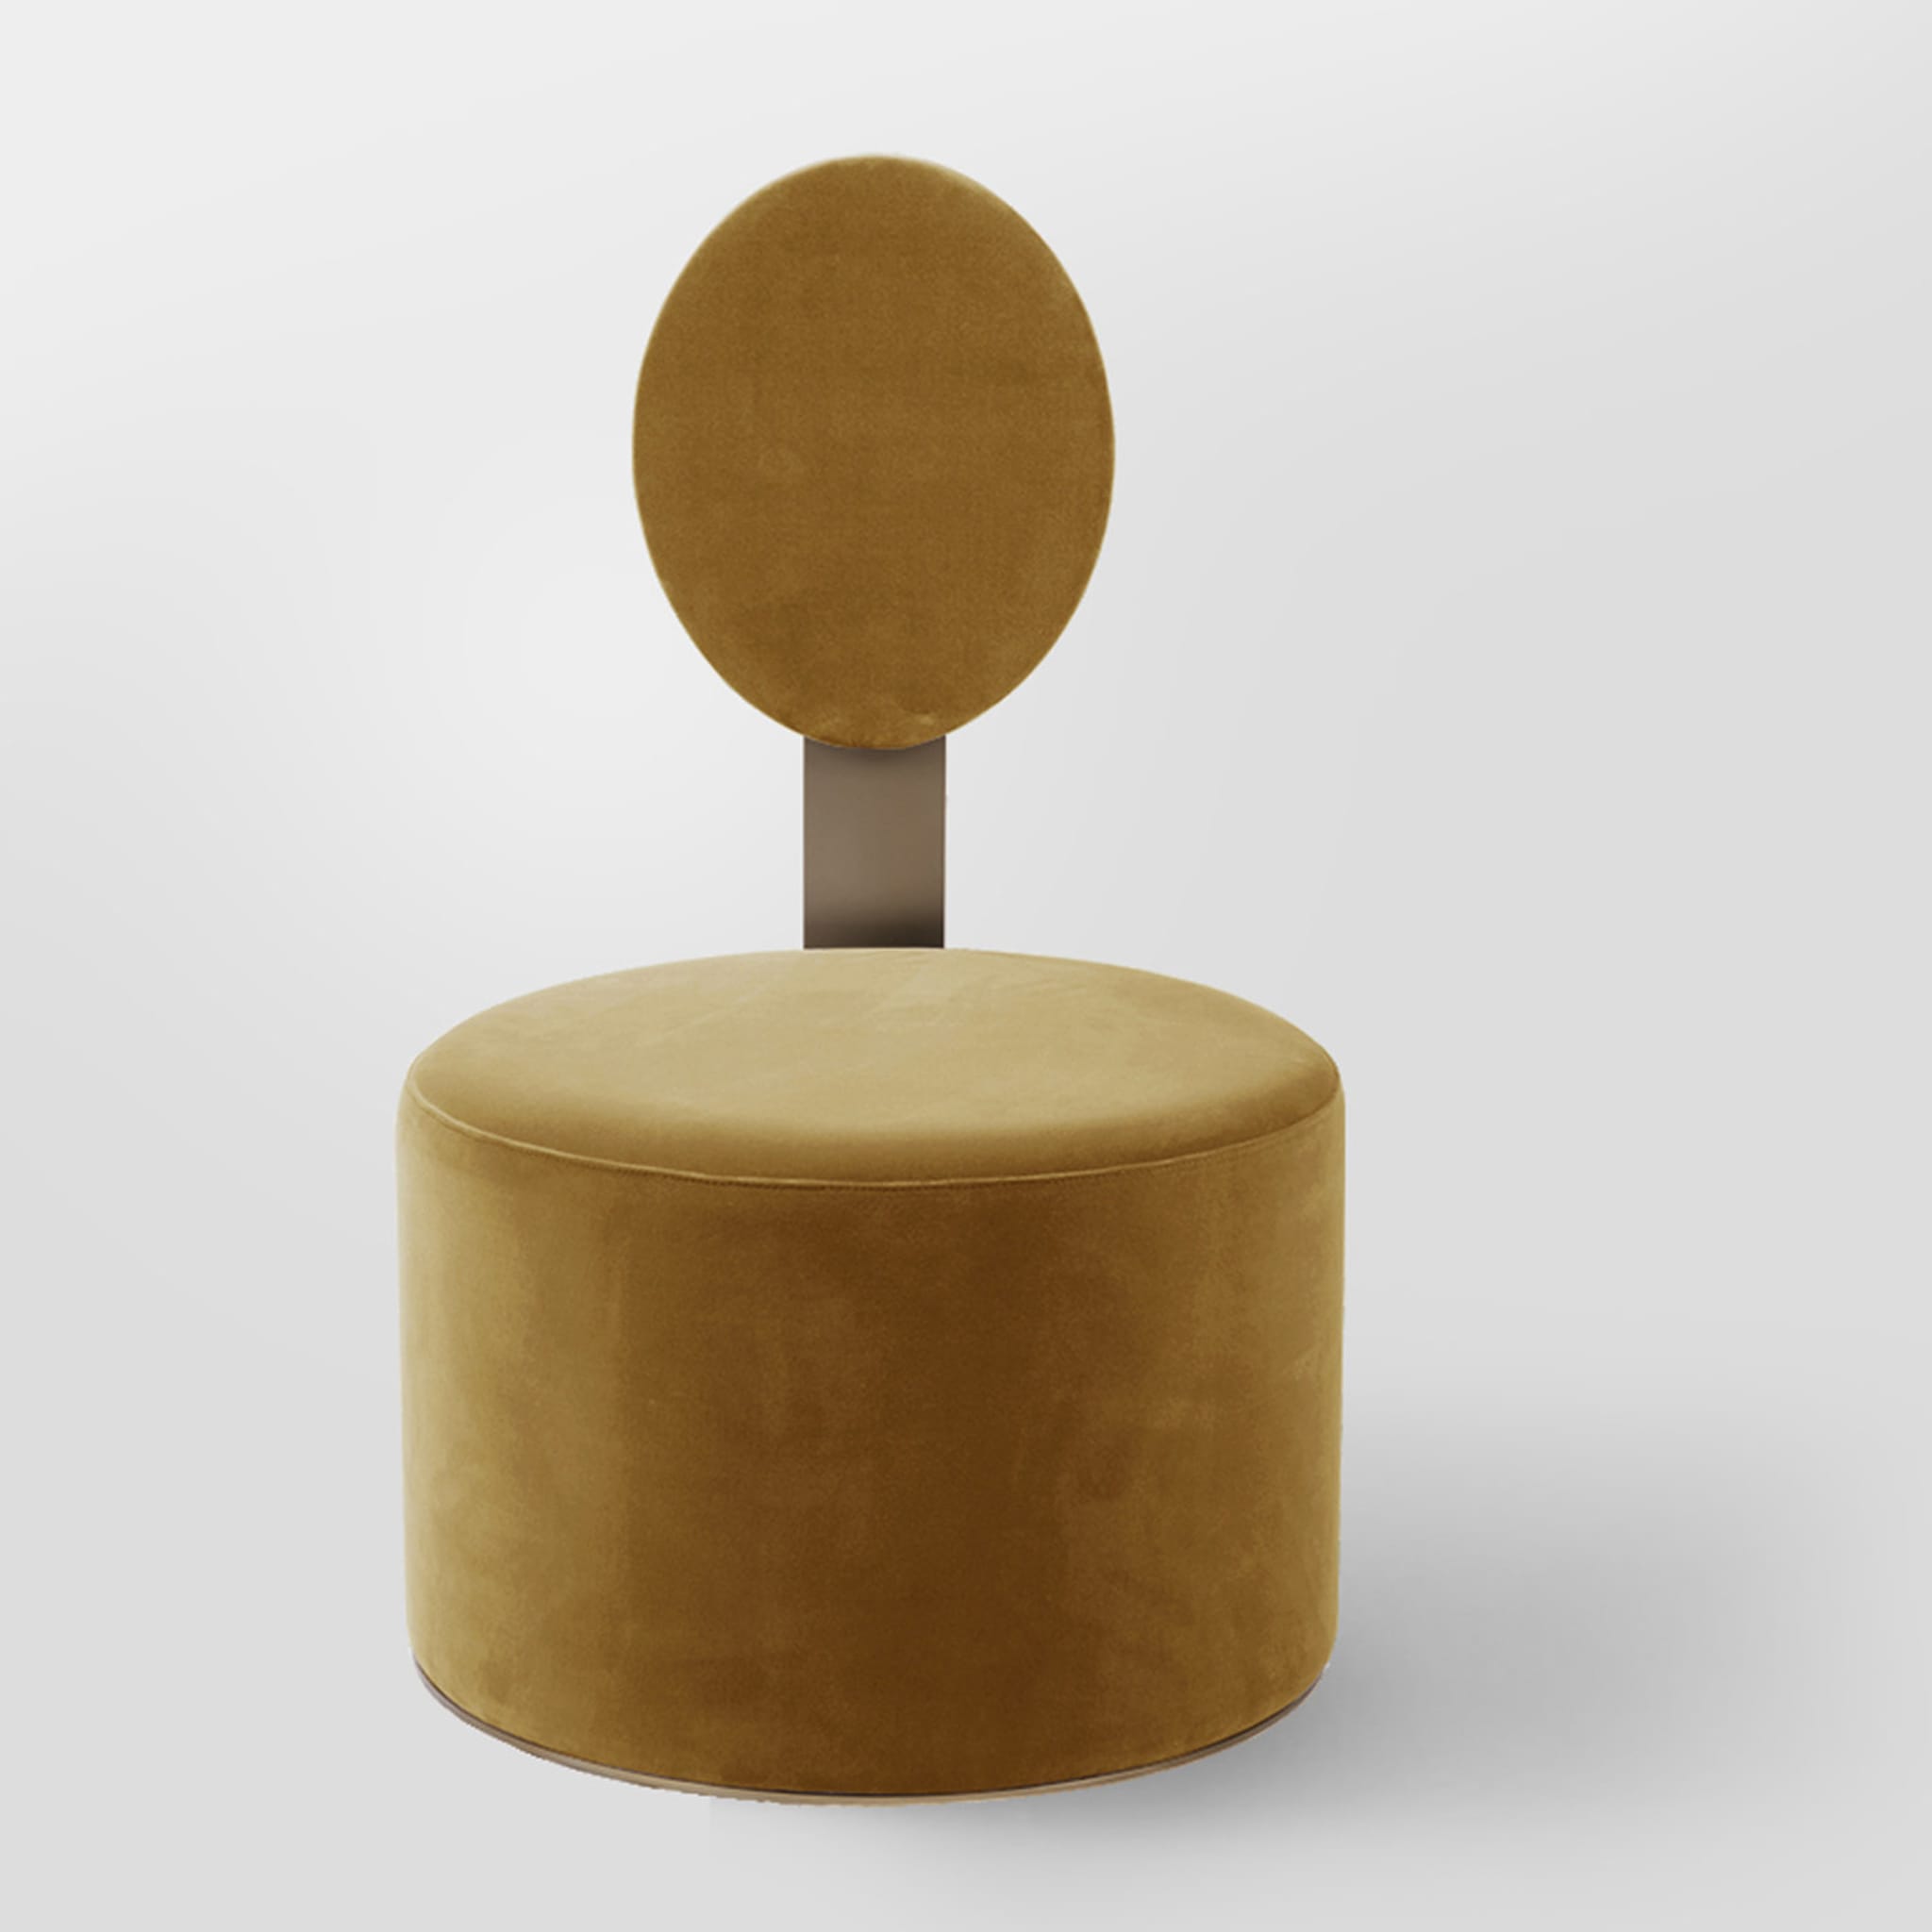 Pop Ocher Chair by Artefatto Design Studio - Alternative view 1